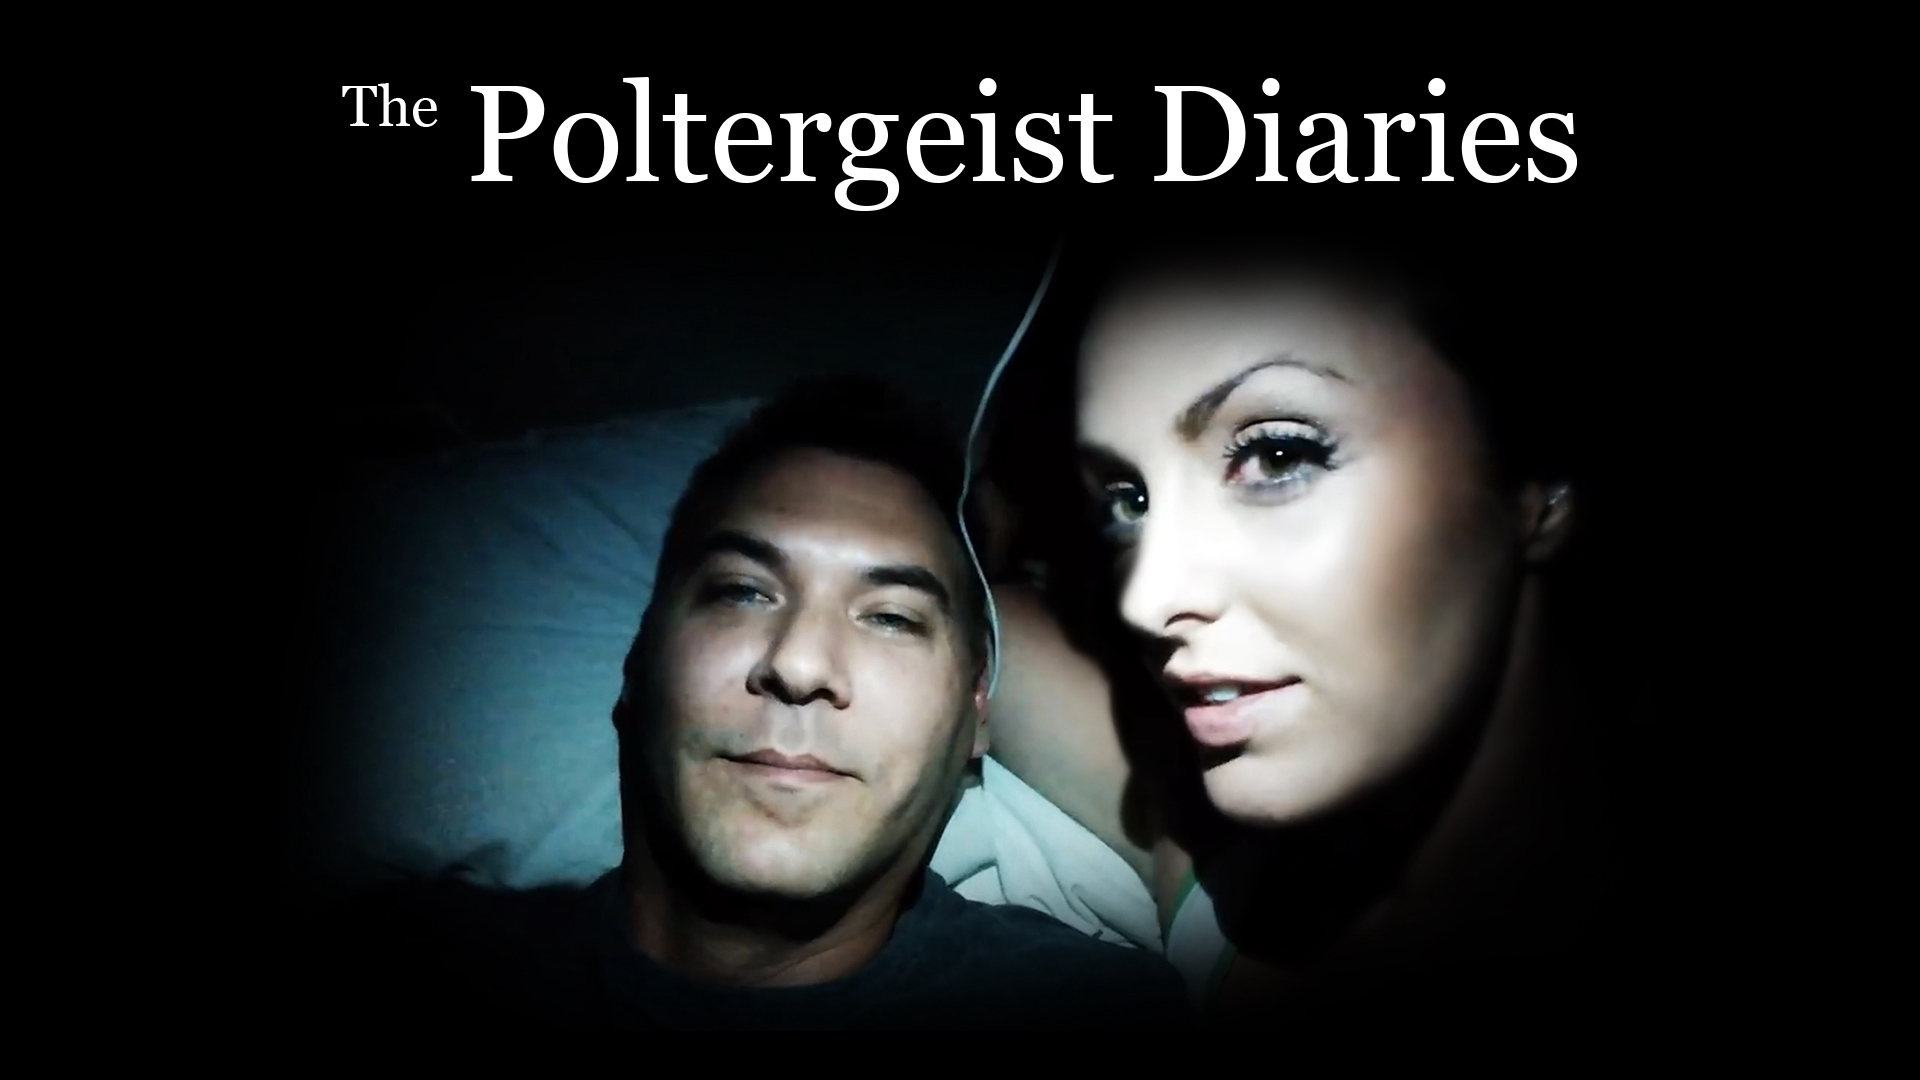 The Poltergeist Diaries / The Poltergeist Diaries (2021)